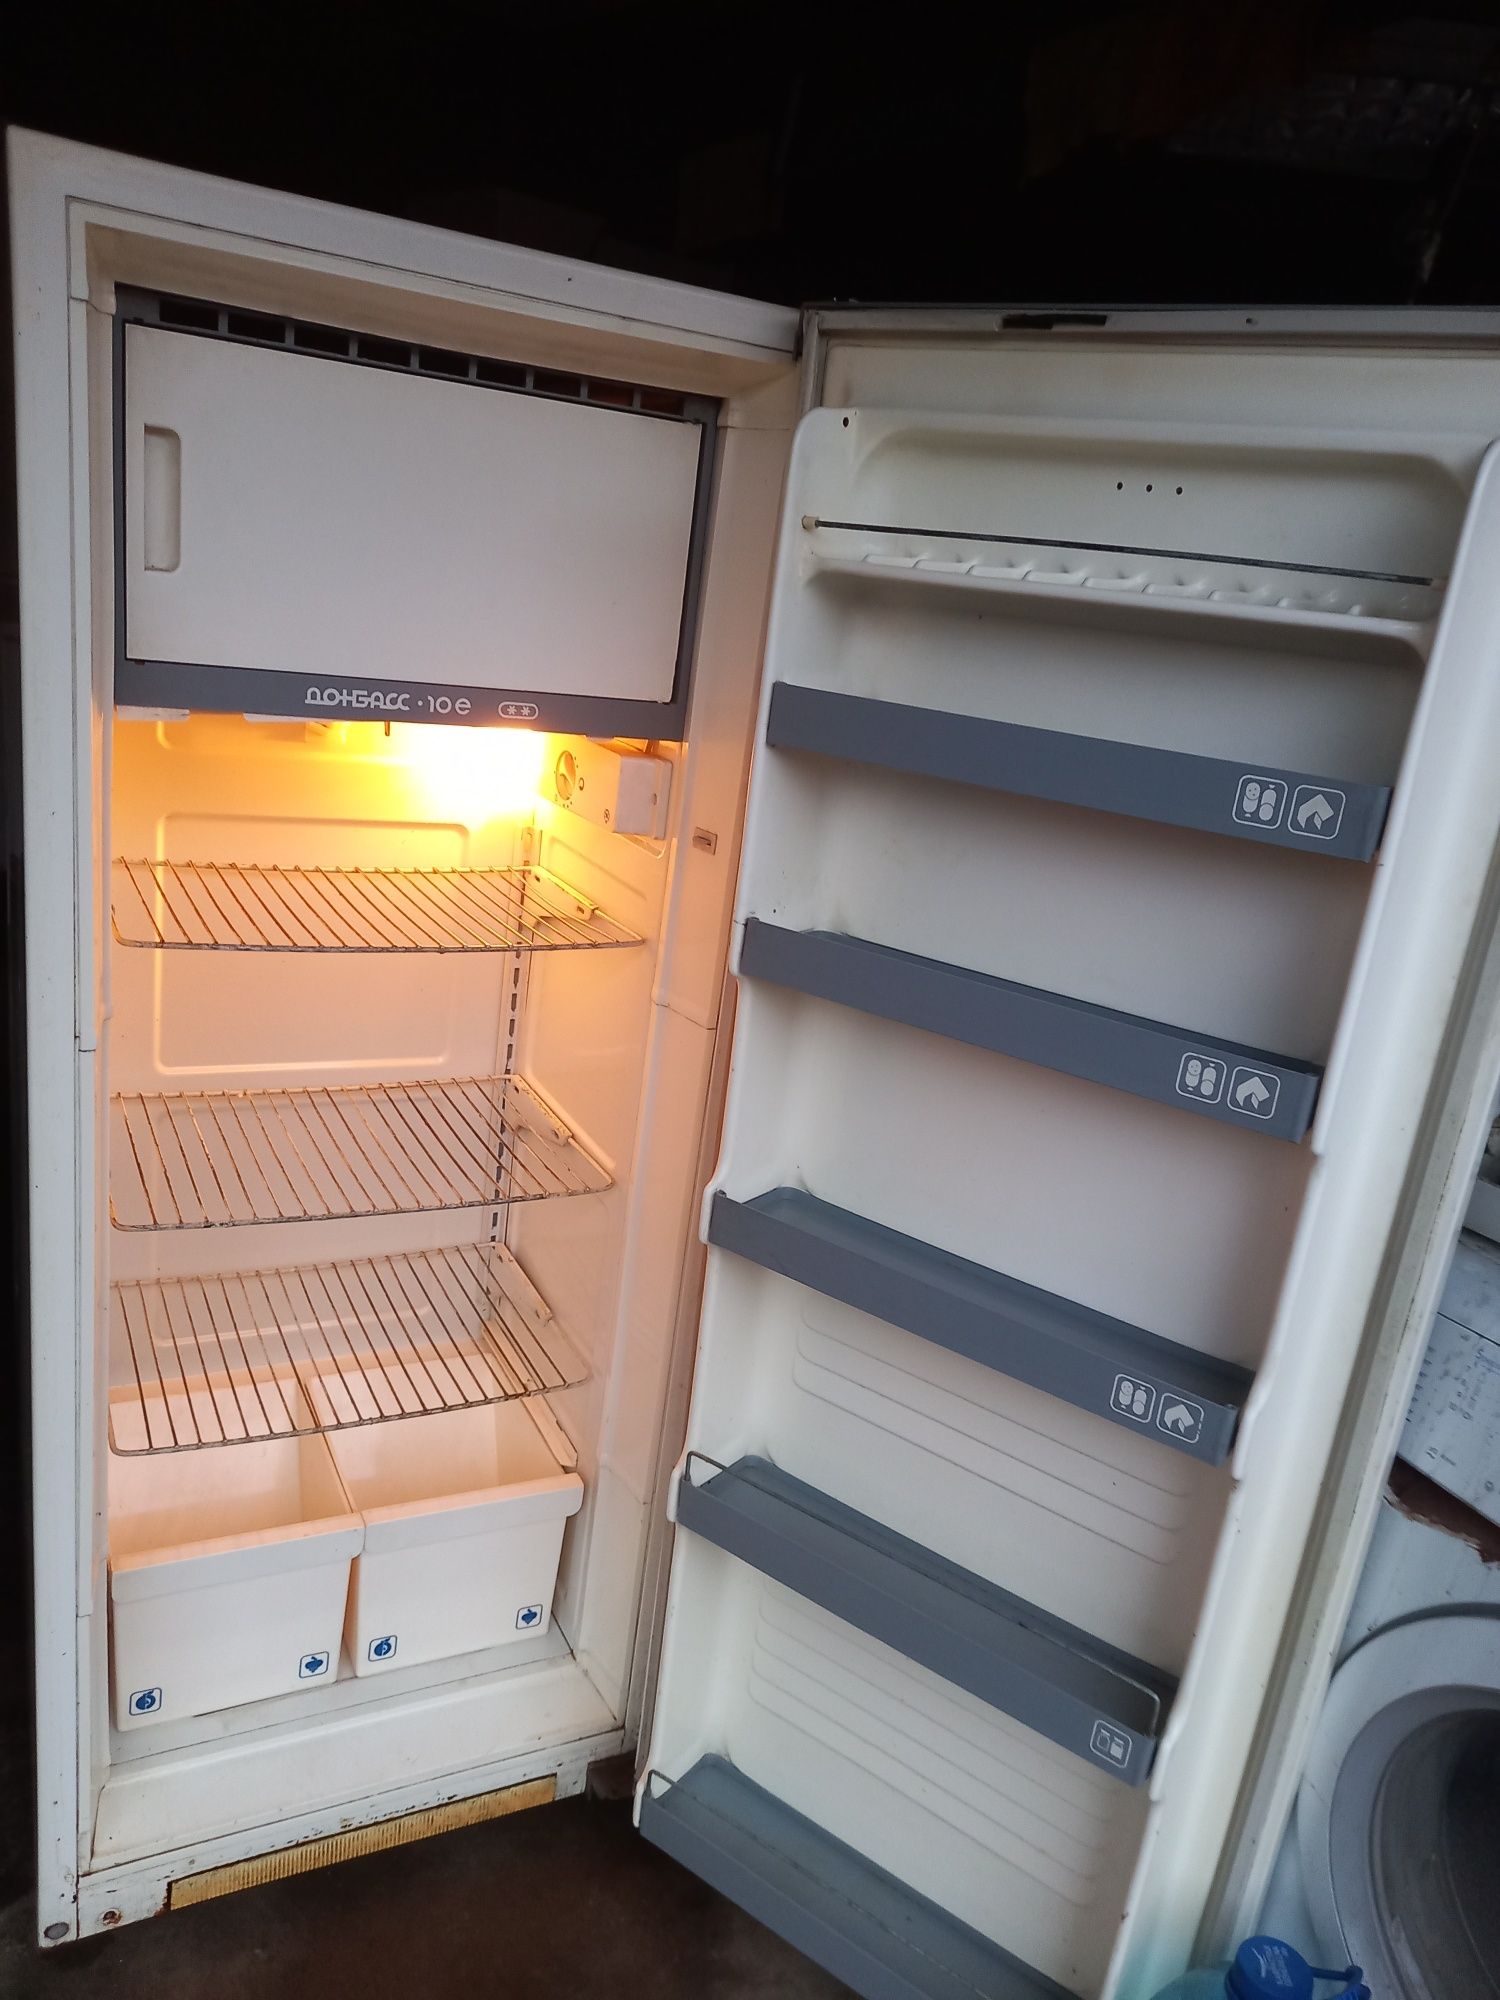 Холодильник "Донбасс-10е"